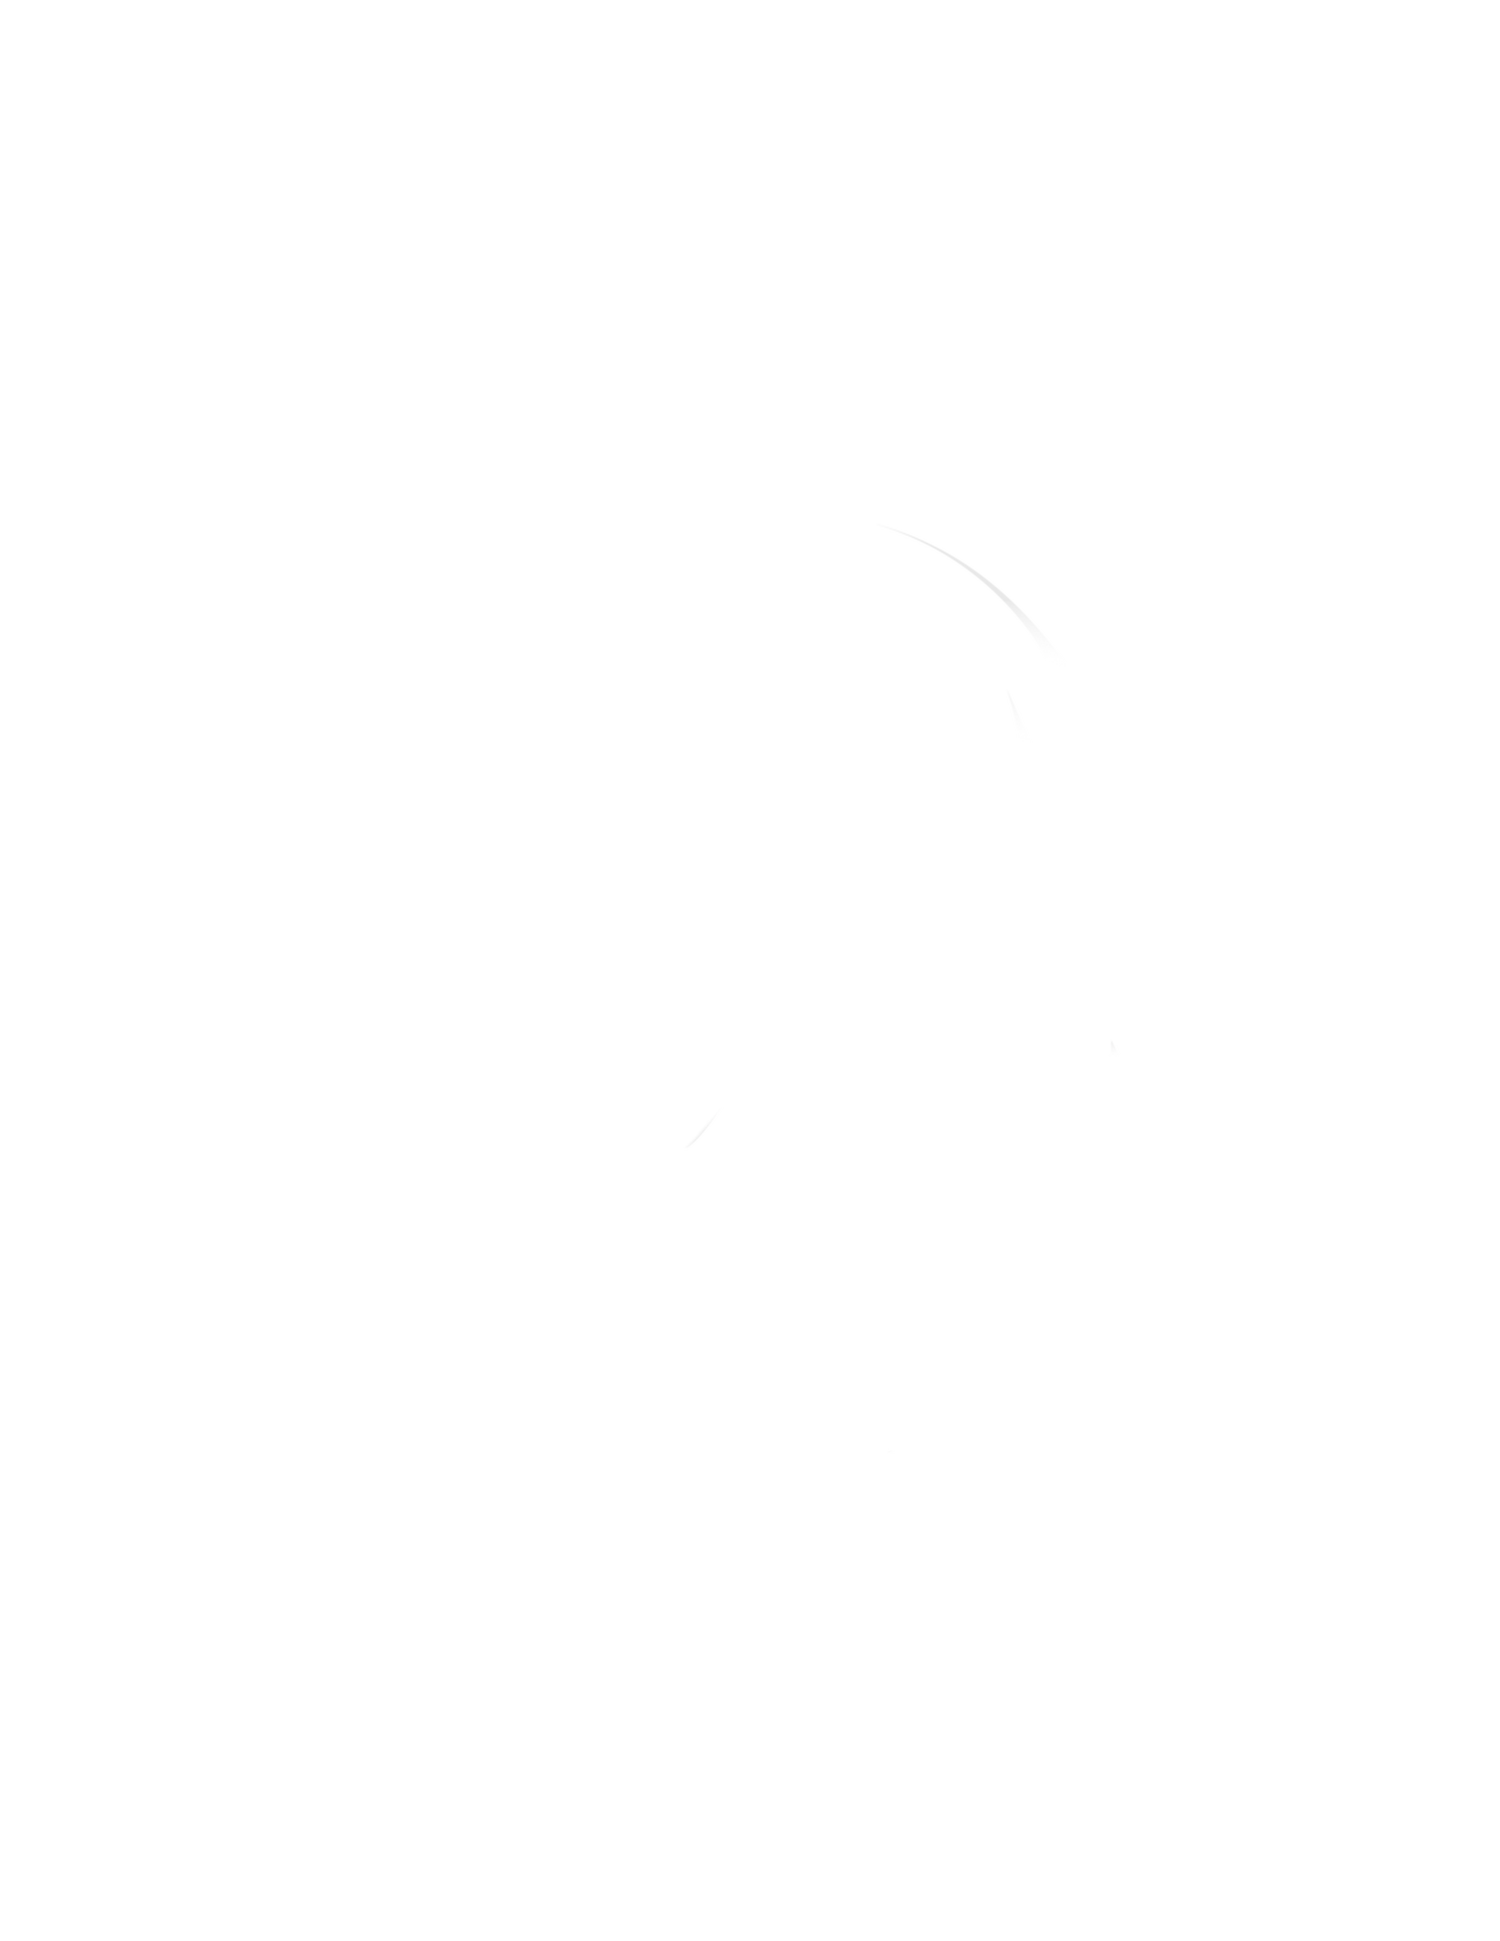 Fern &amp; Fire Photos